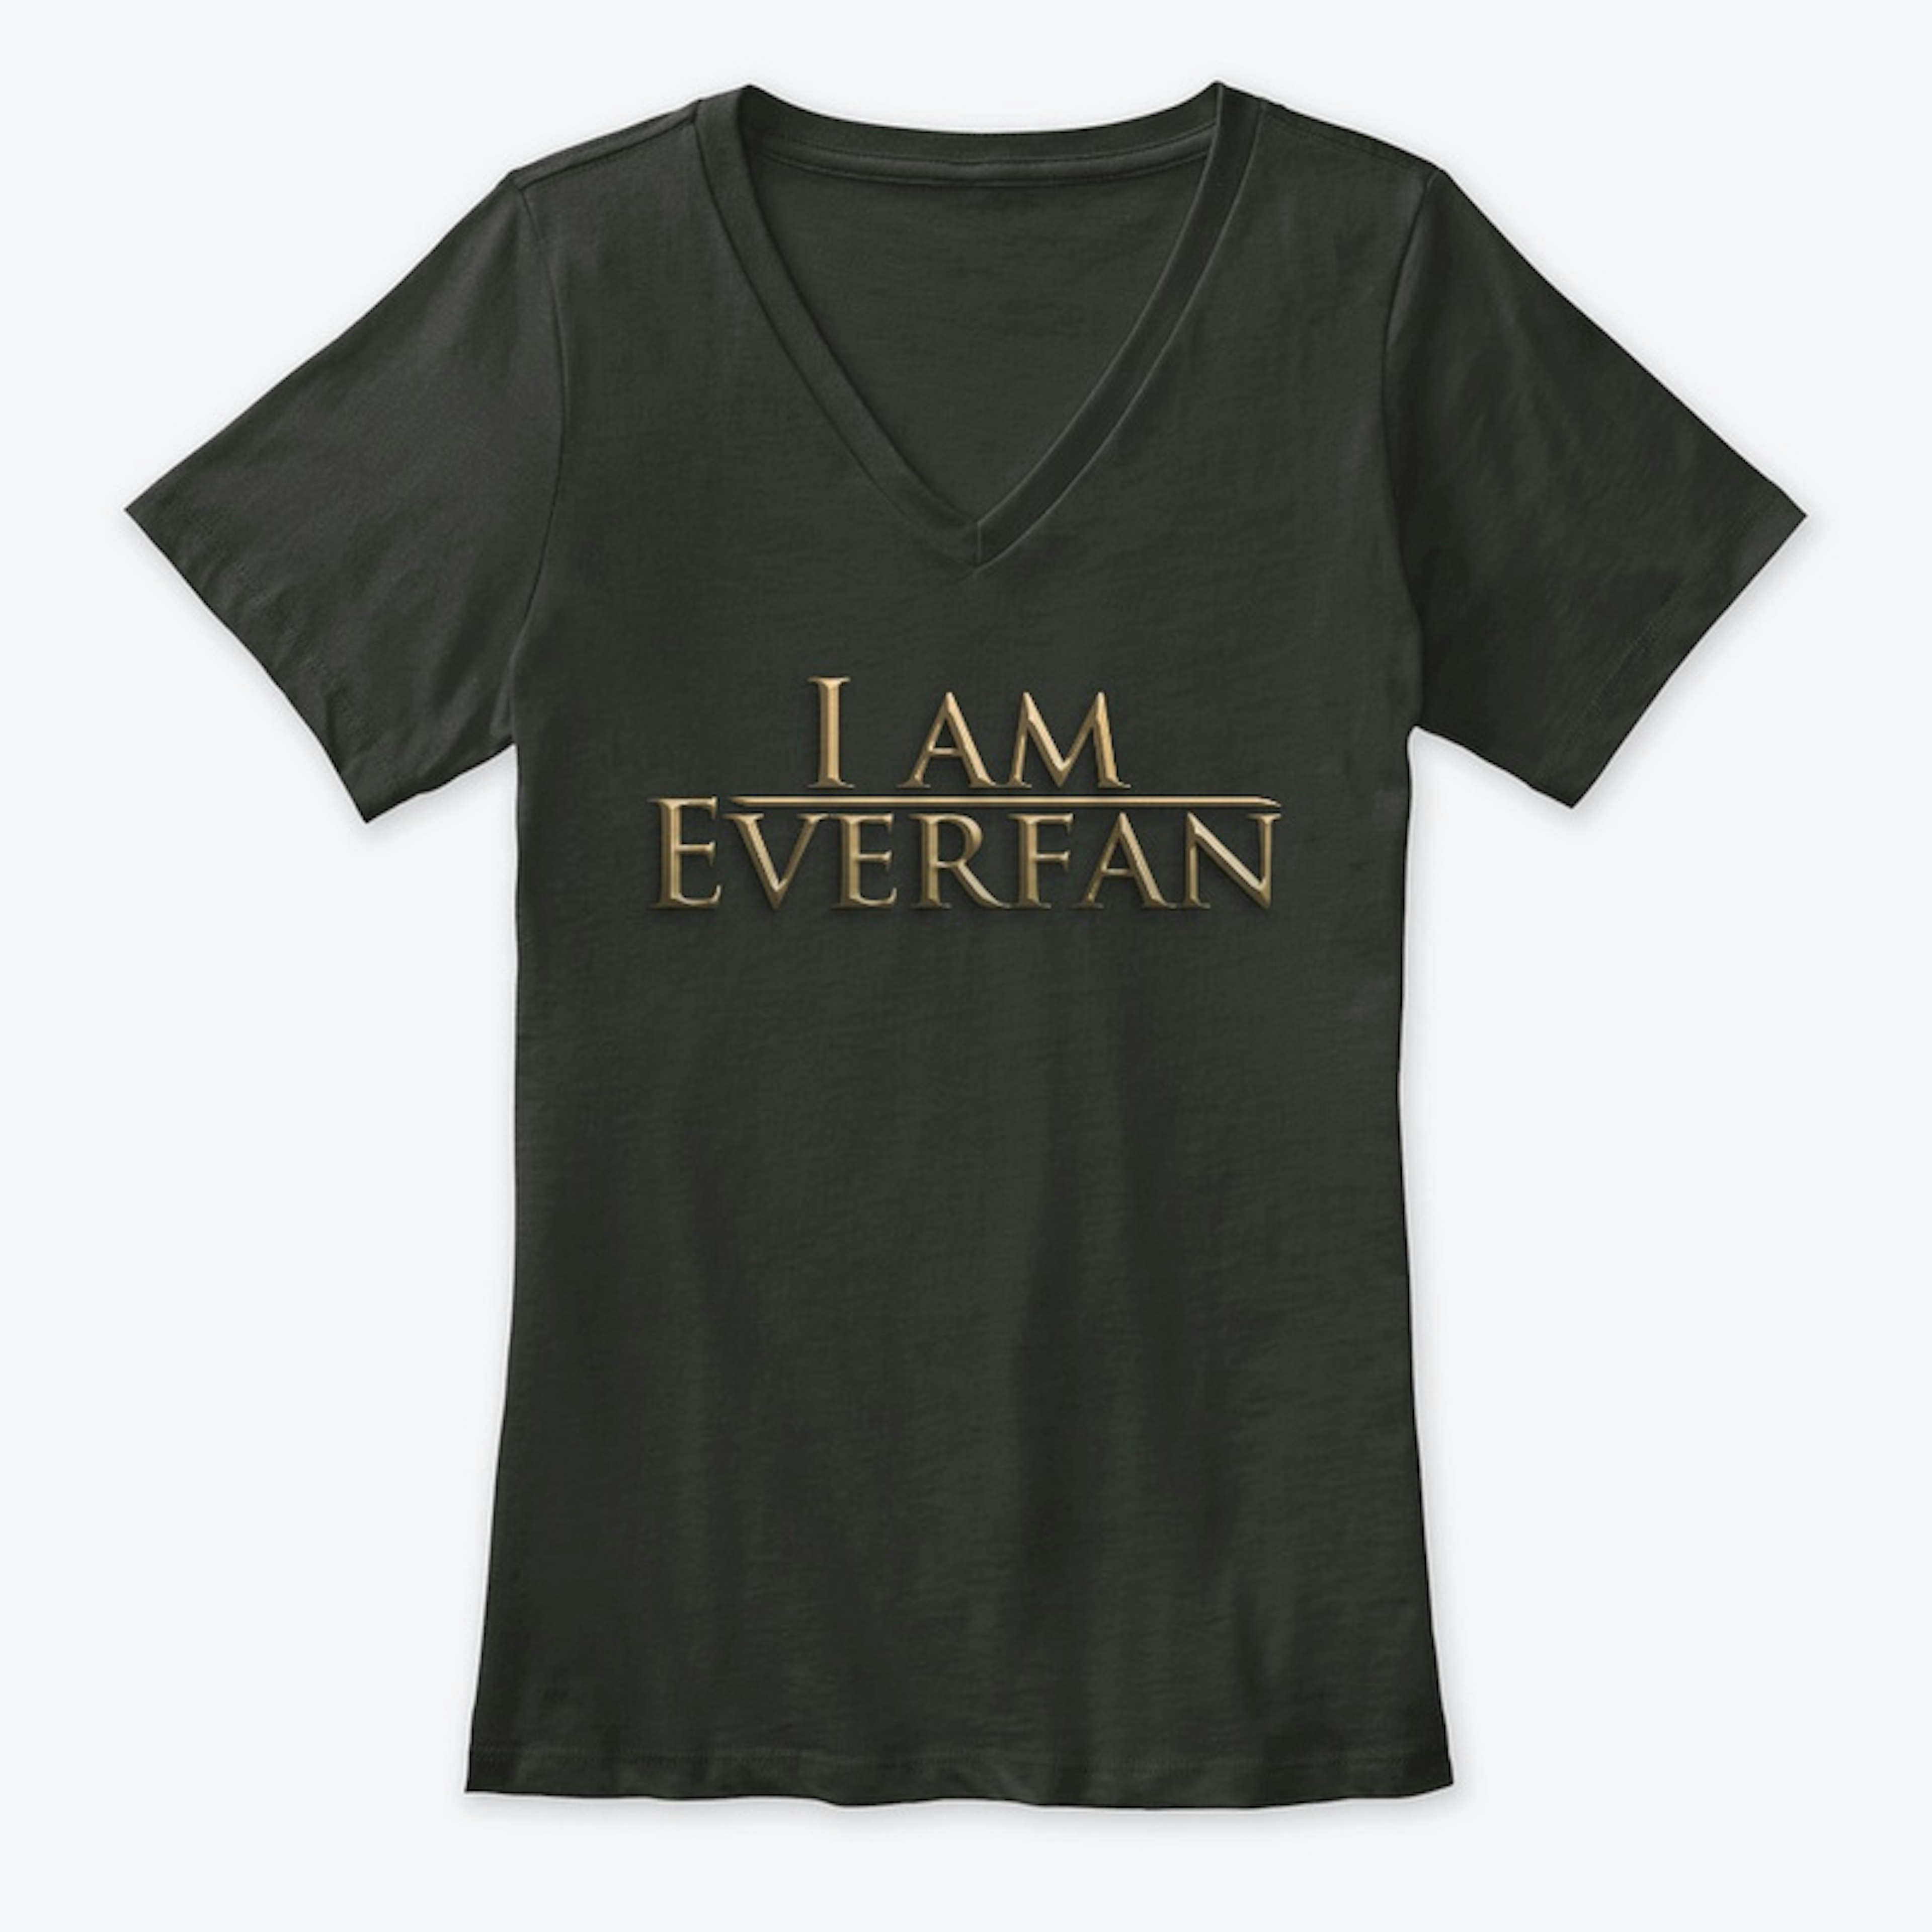 I AM EVERFAN